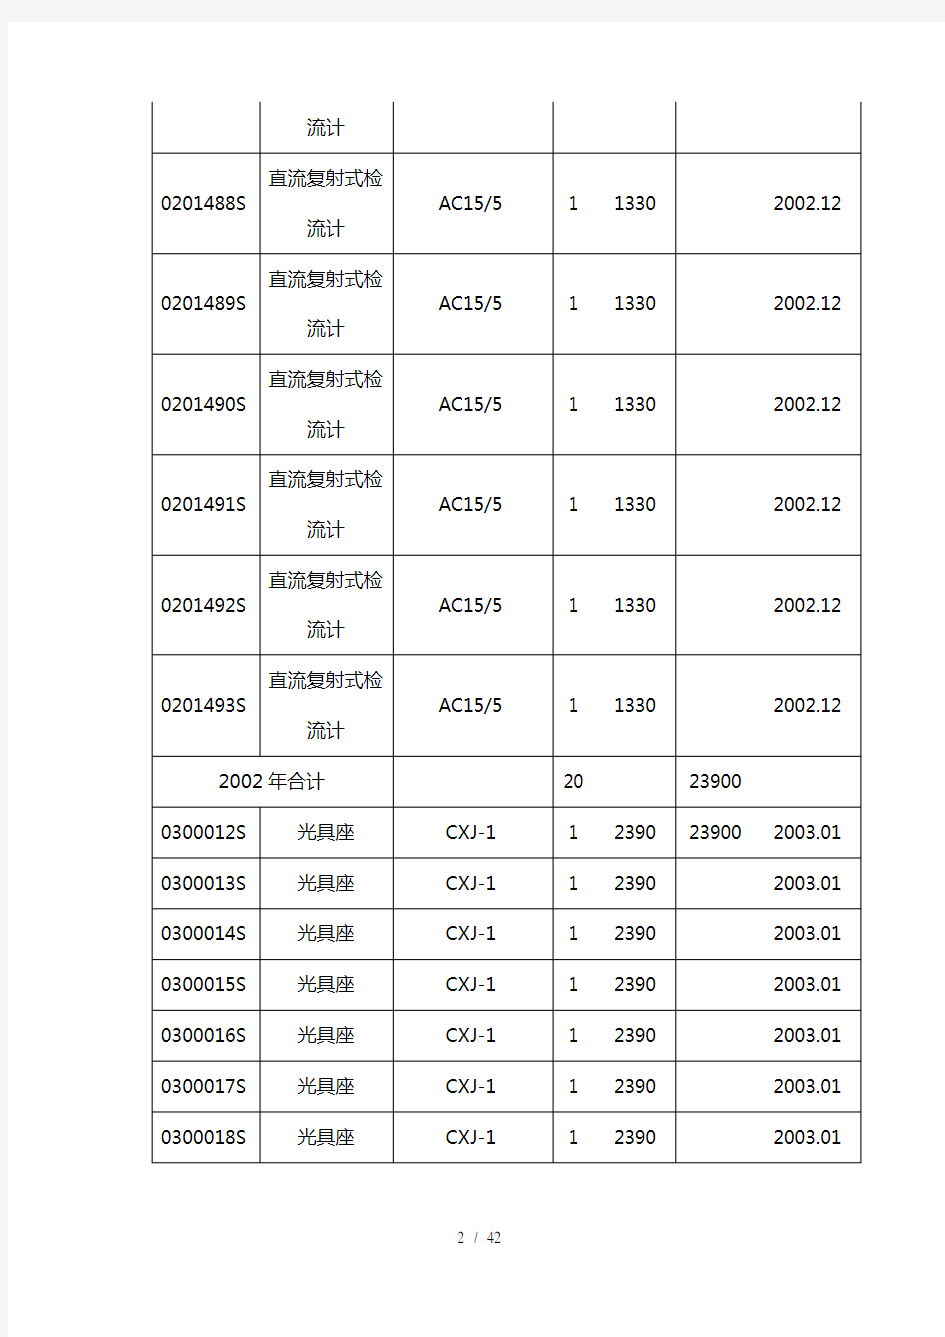 主要仪器设备一览表仪器编号设备名称型号规格数量单价